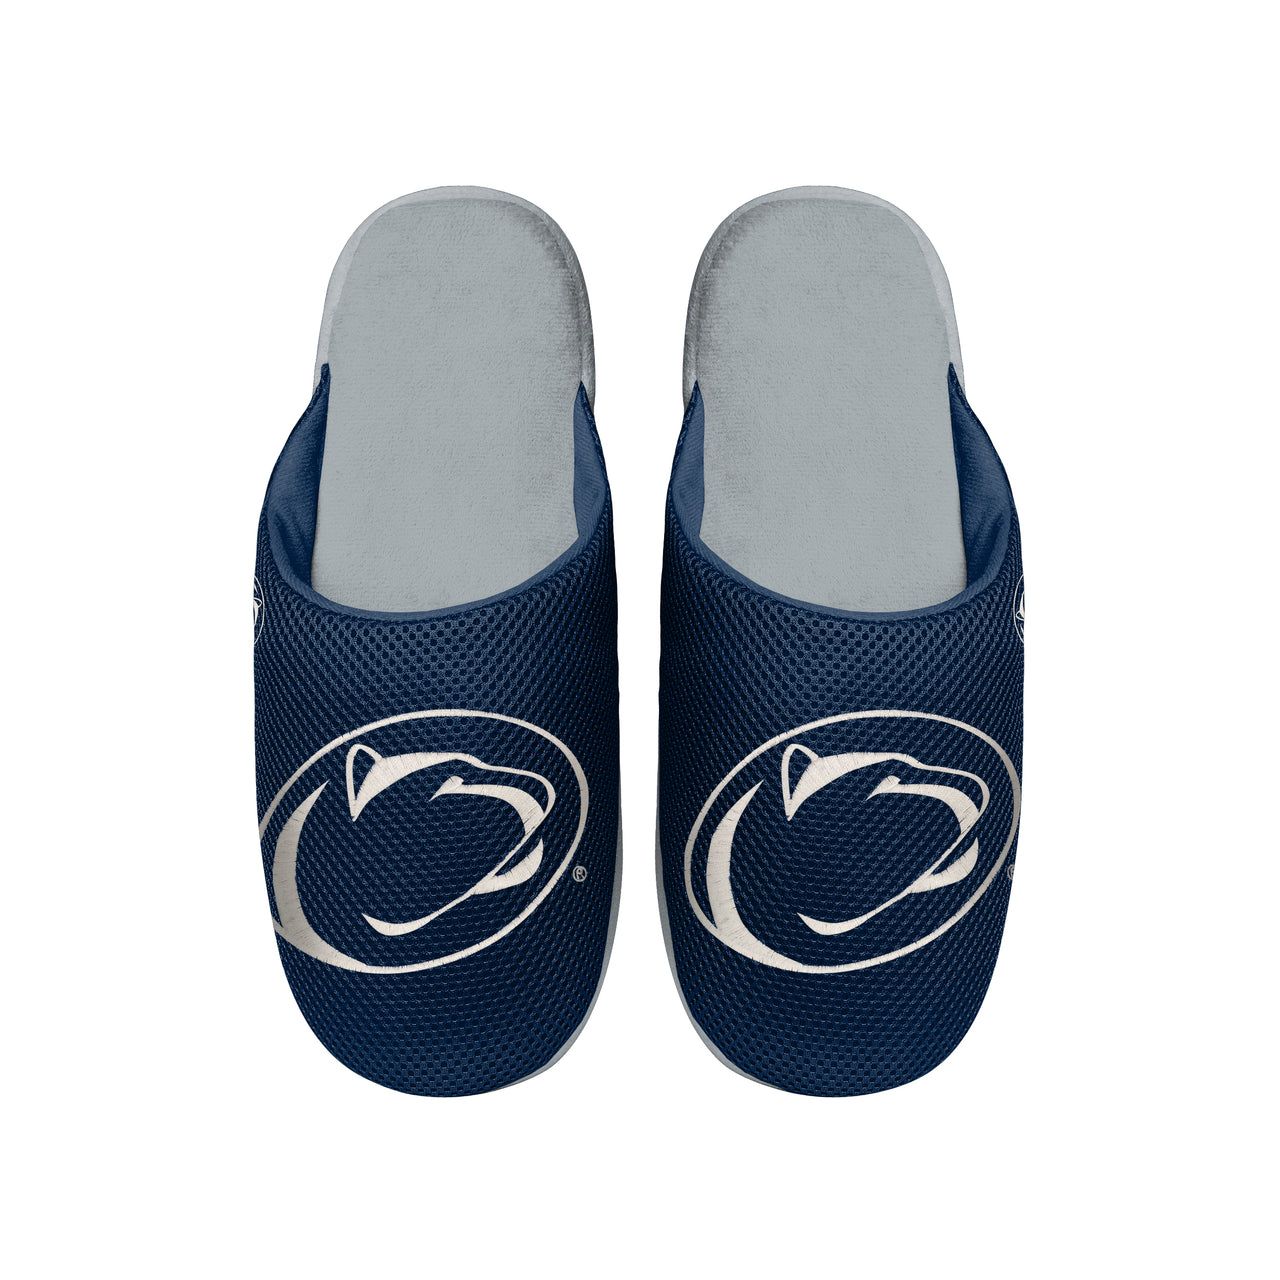 Penn State Nittany Lions Mesh Slide Slippers